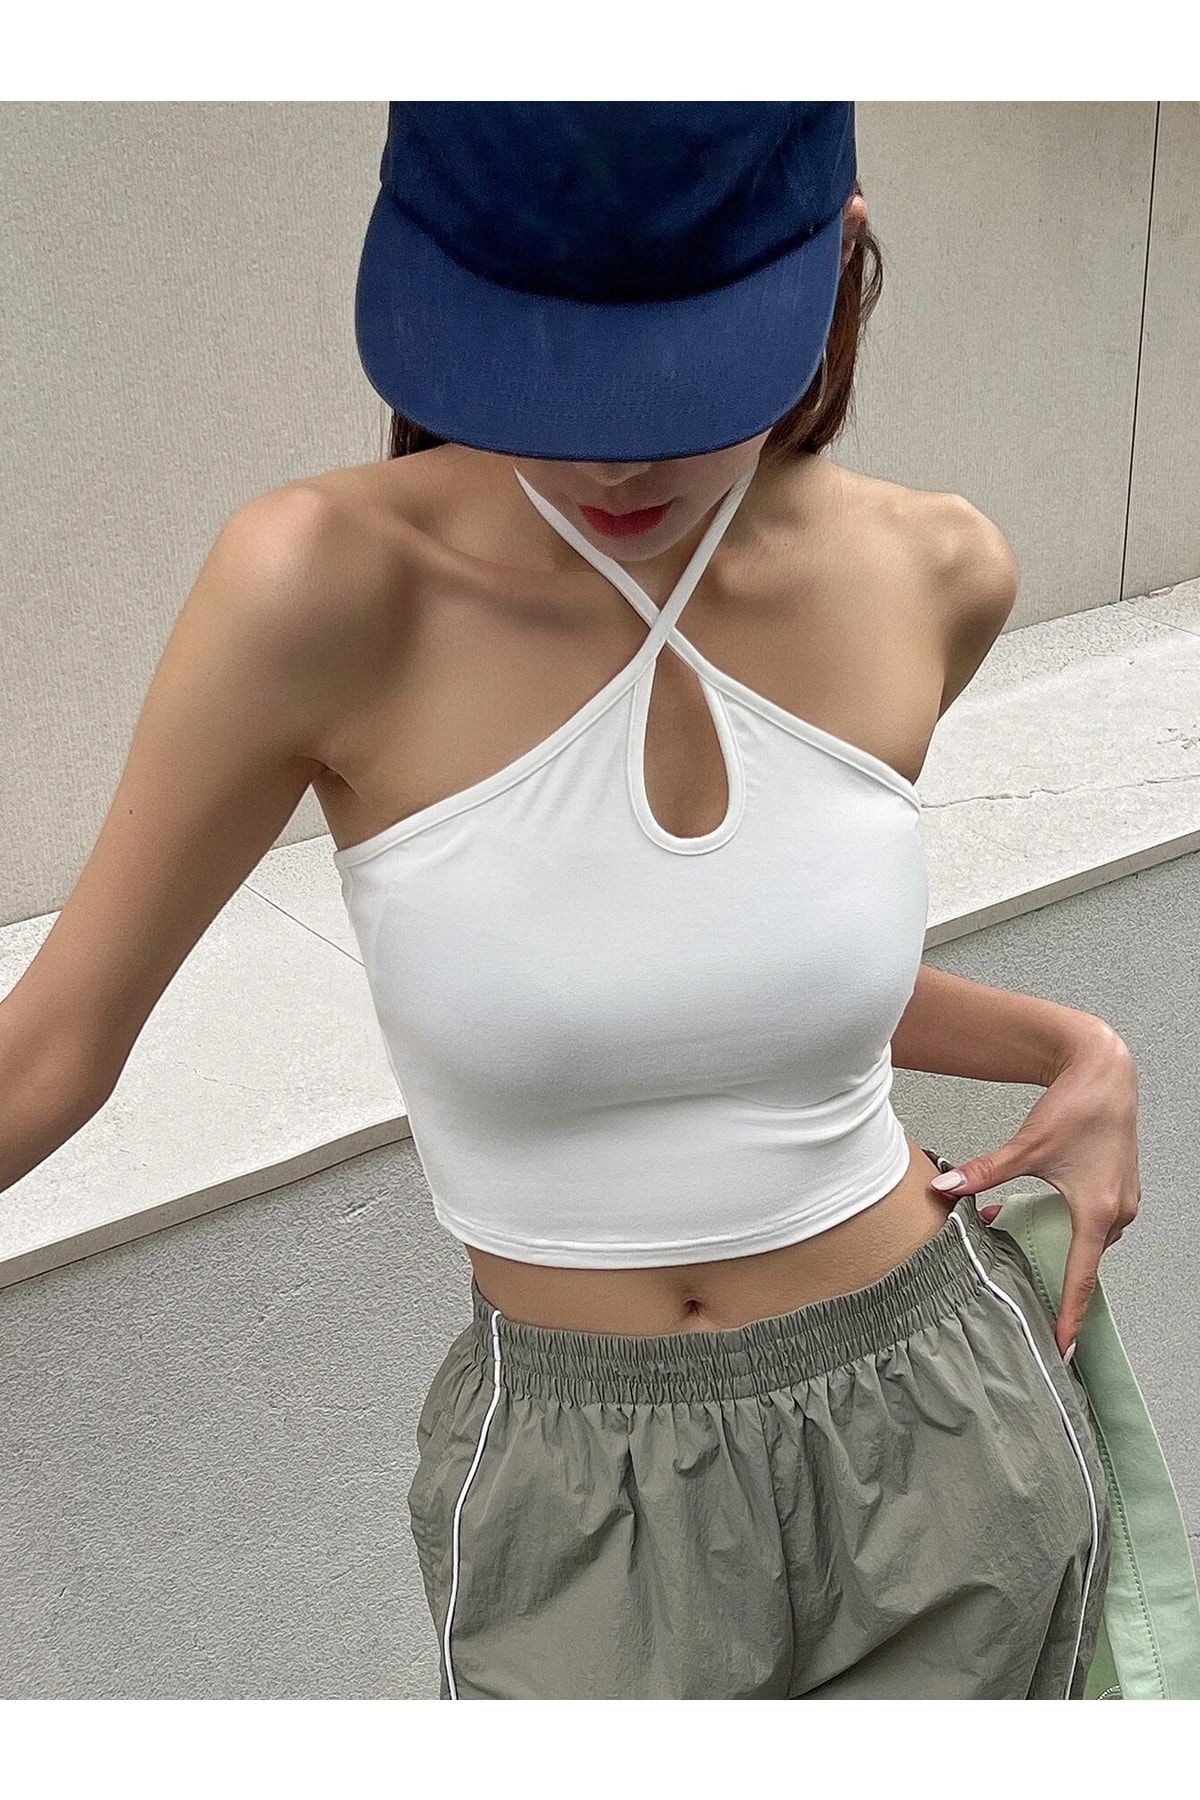 Liona Kadın Halter Yaka Beyaz Renk Bağlamalı Crop Top Bluz